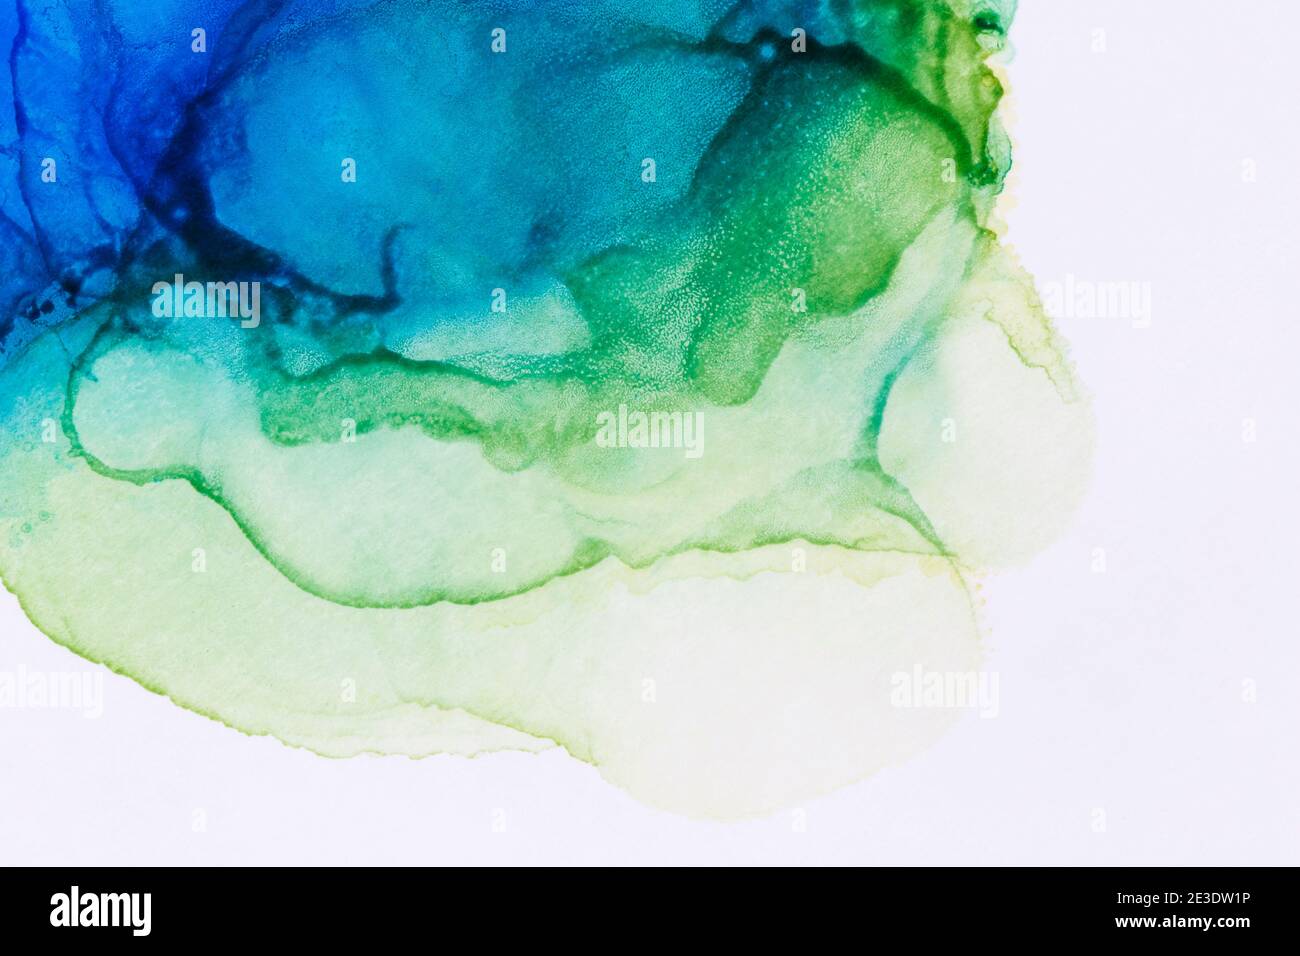 Makro-Nahaufnahme von abstrakter blauer und grüner Alkoholtinte auf Weiß. Flüssige Tinte, bunt strukturierter Hintergrund. Lebendige Farben. Kunst für Design. Stockfoto